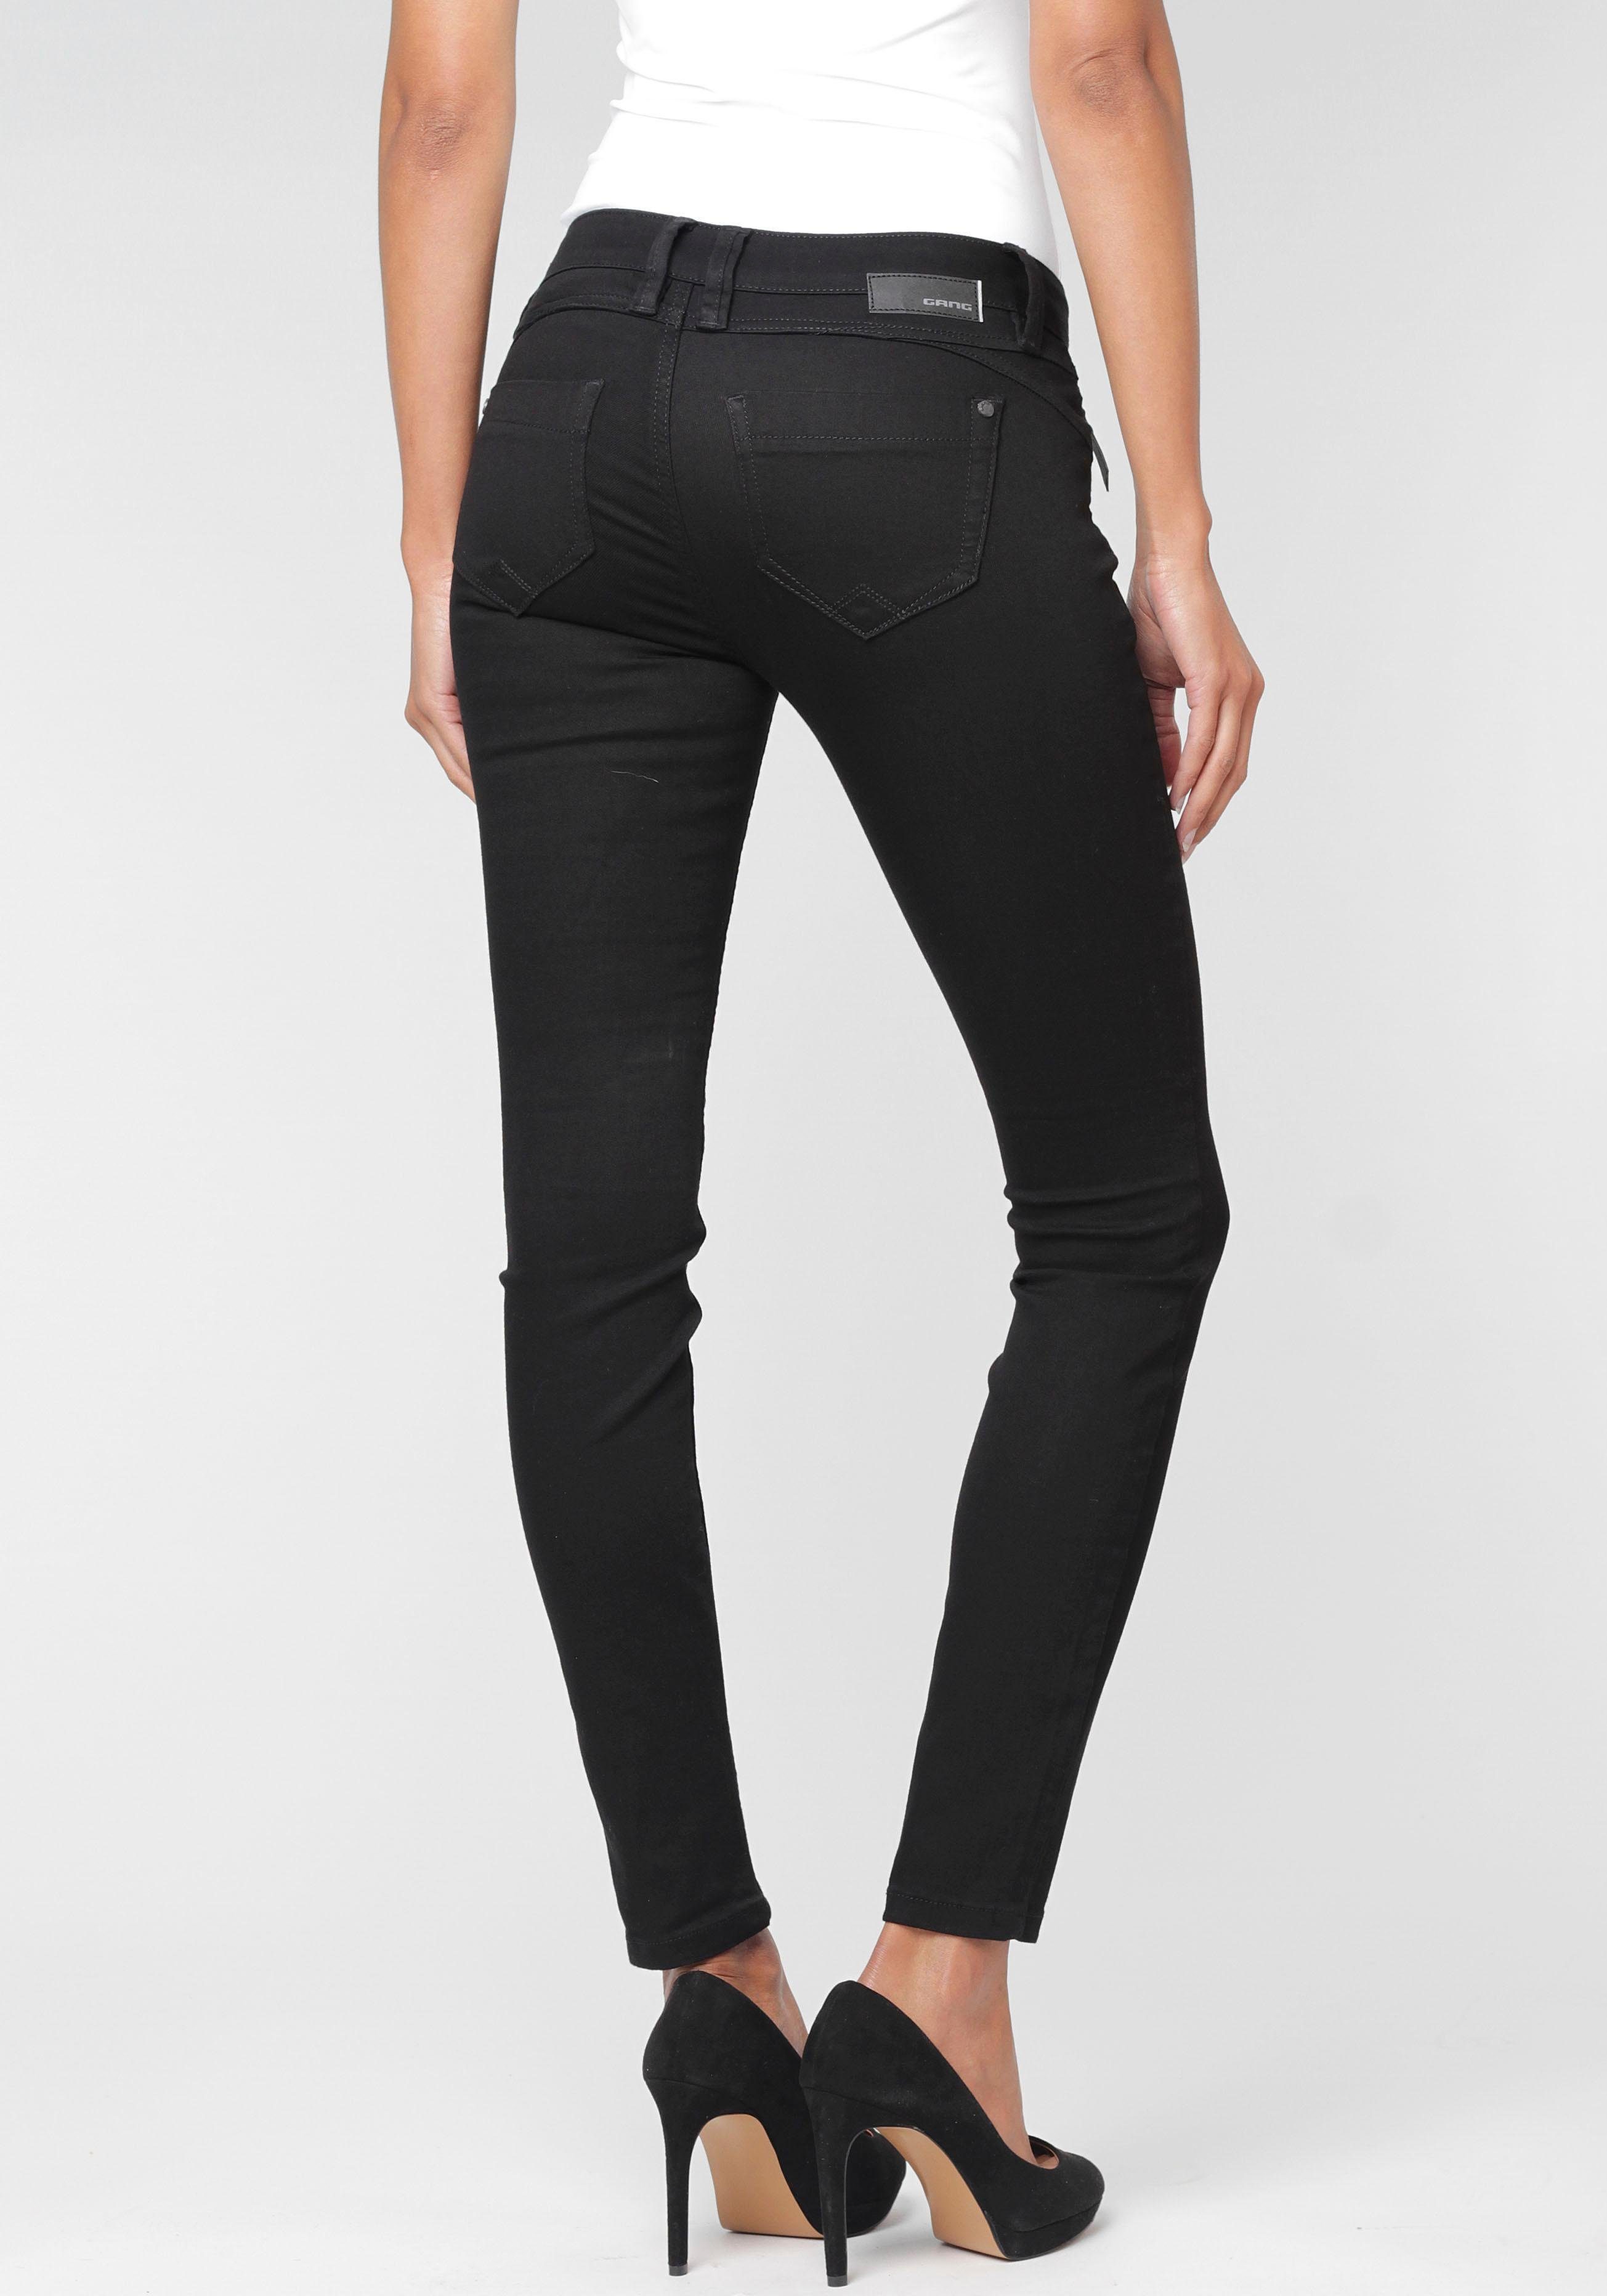 GANG Skinny-fit-Jeans 94Nikita mit Zipper-Detail an der Coinpocket,  Denimqualität mit Wohlfühlfaktor durch Stretchanteil